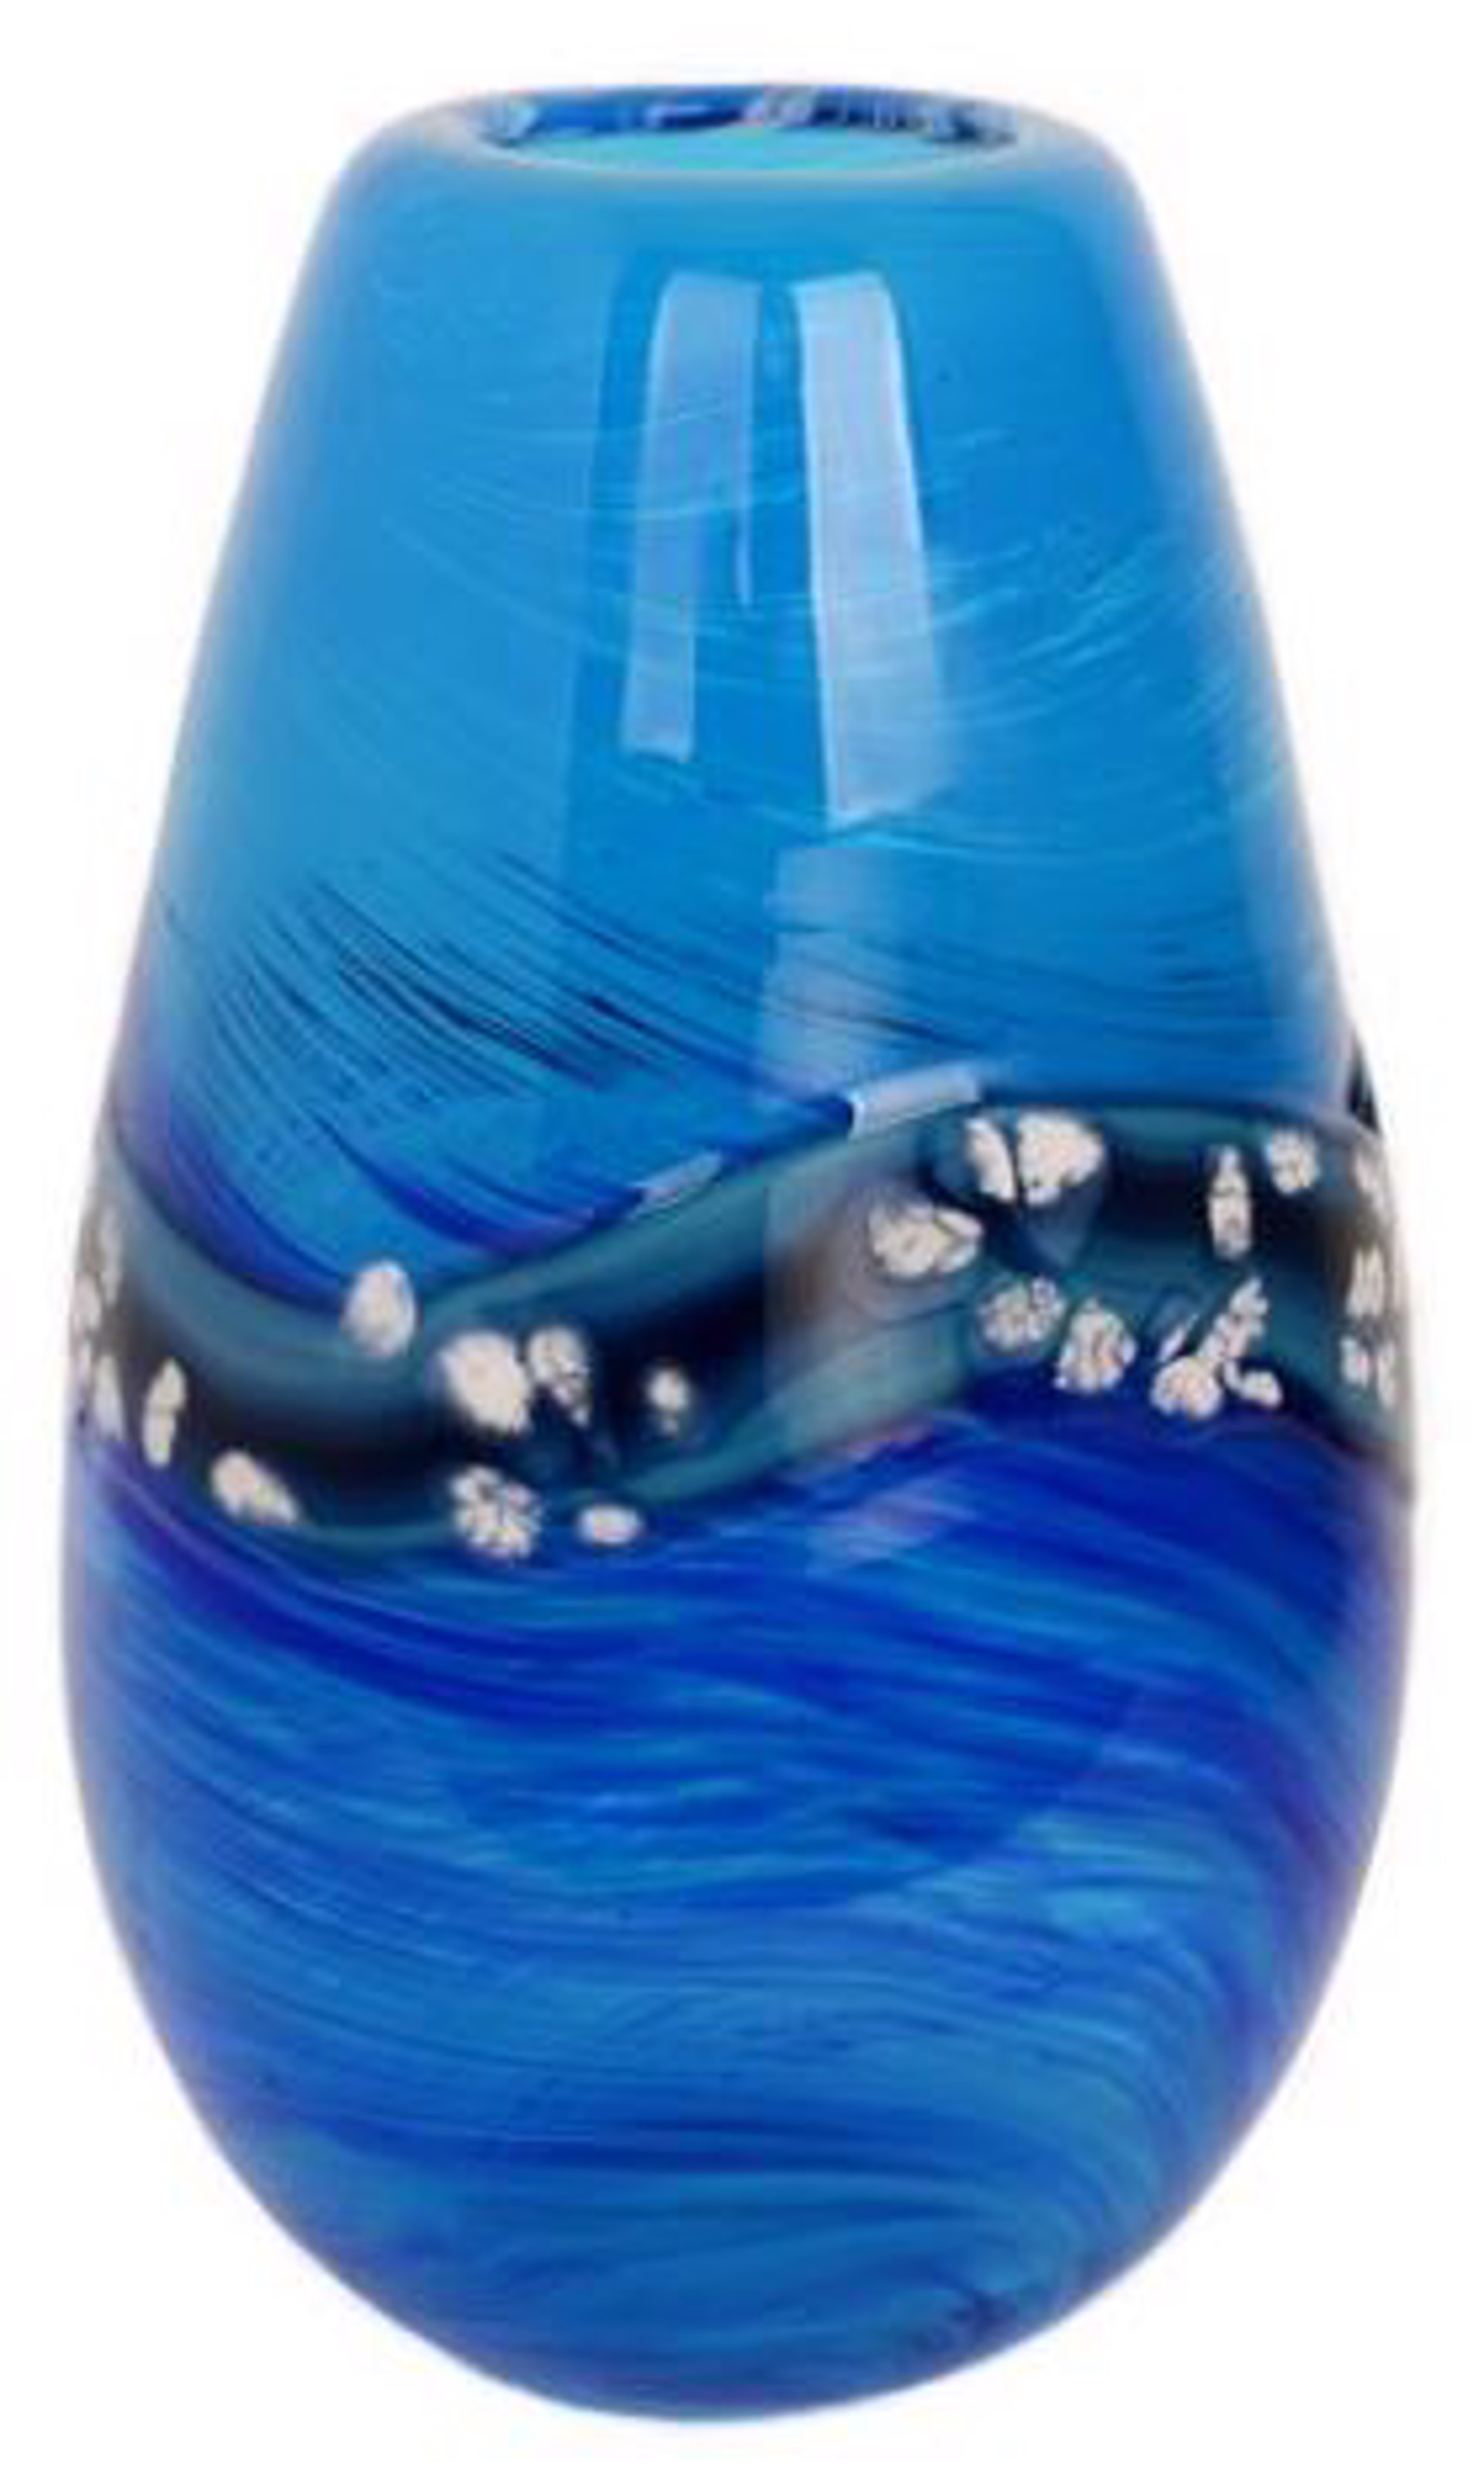 Aqua and Cobalt Teardrop, White Fritz Applique - 8001 by V Handblown Glass